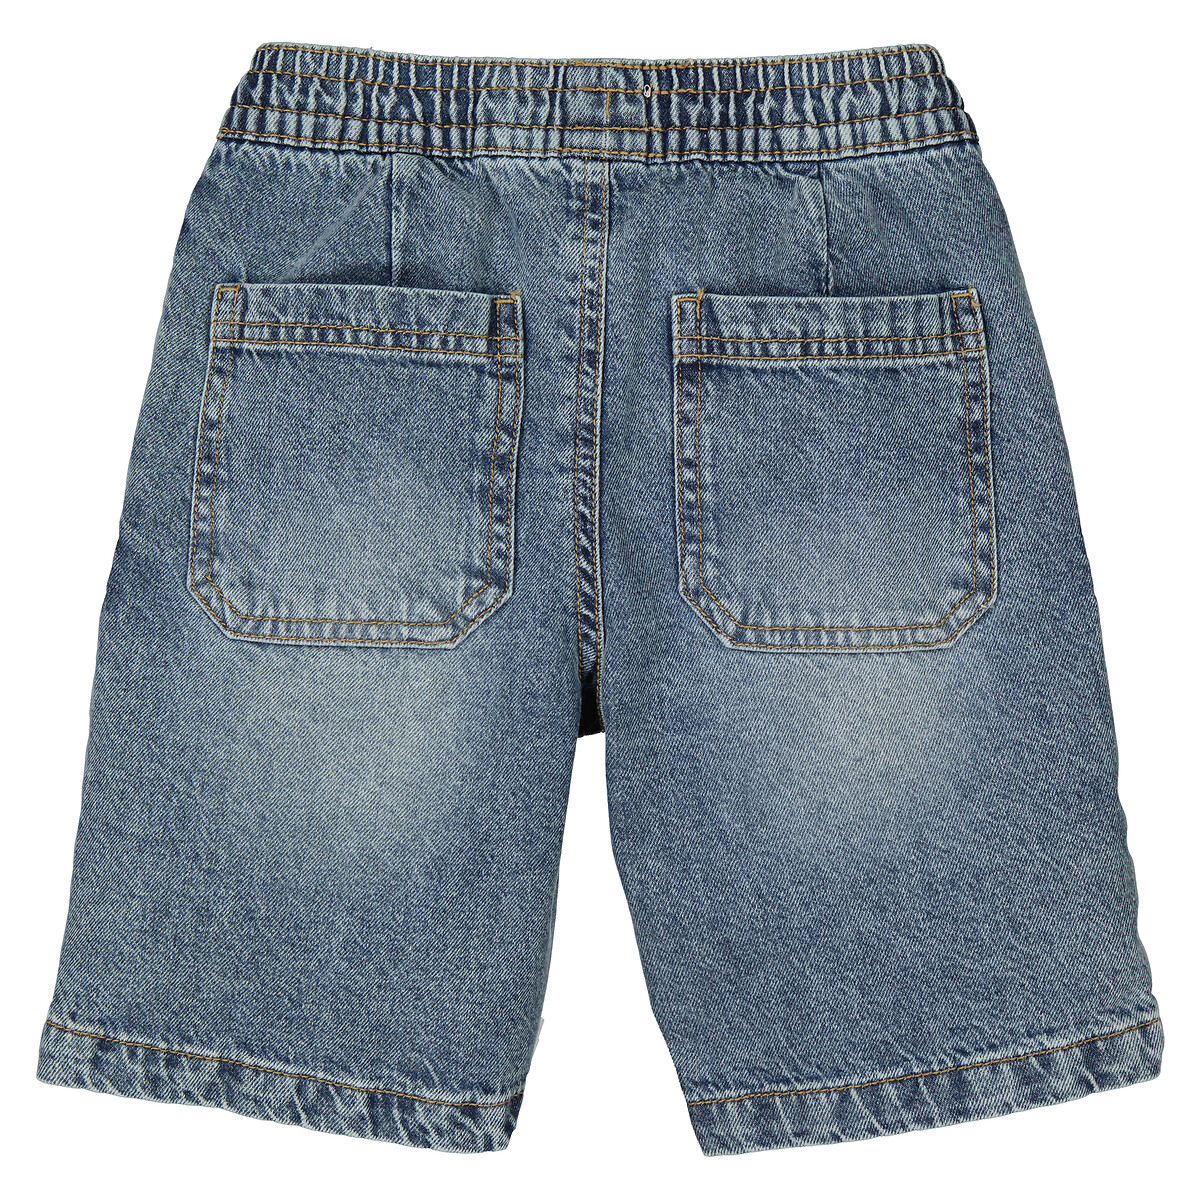 Бермуды Из джинсовой ткани с поясом на резинке 10 синий LaRedoute, размер 10 - фото 4